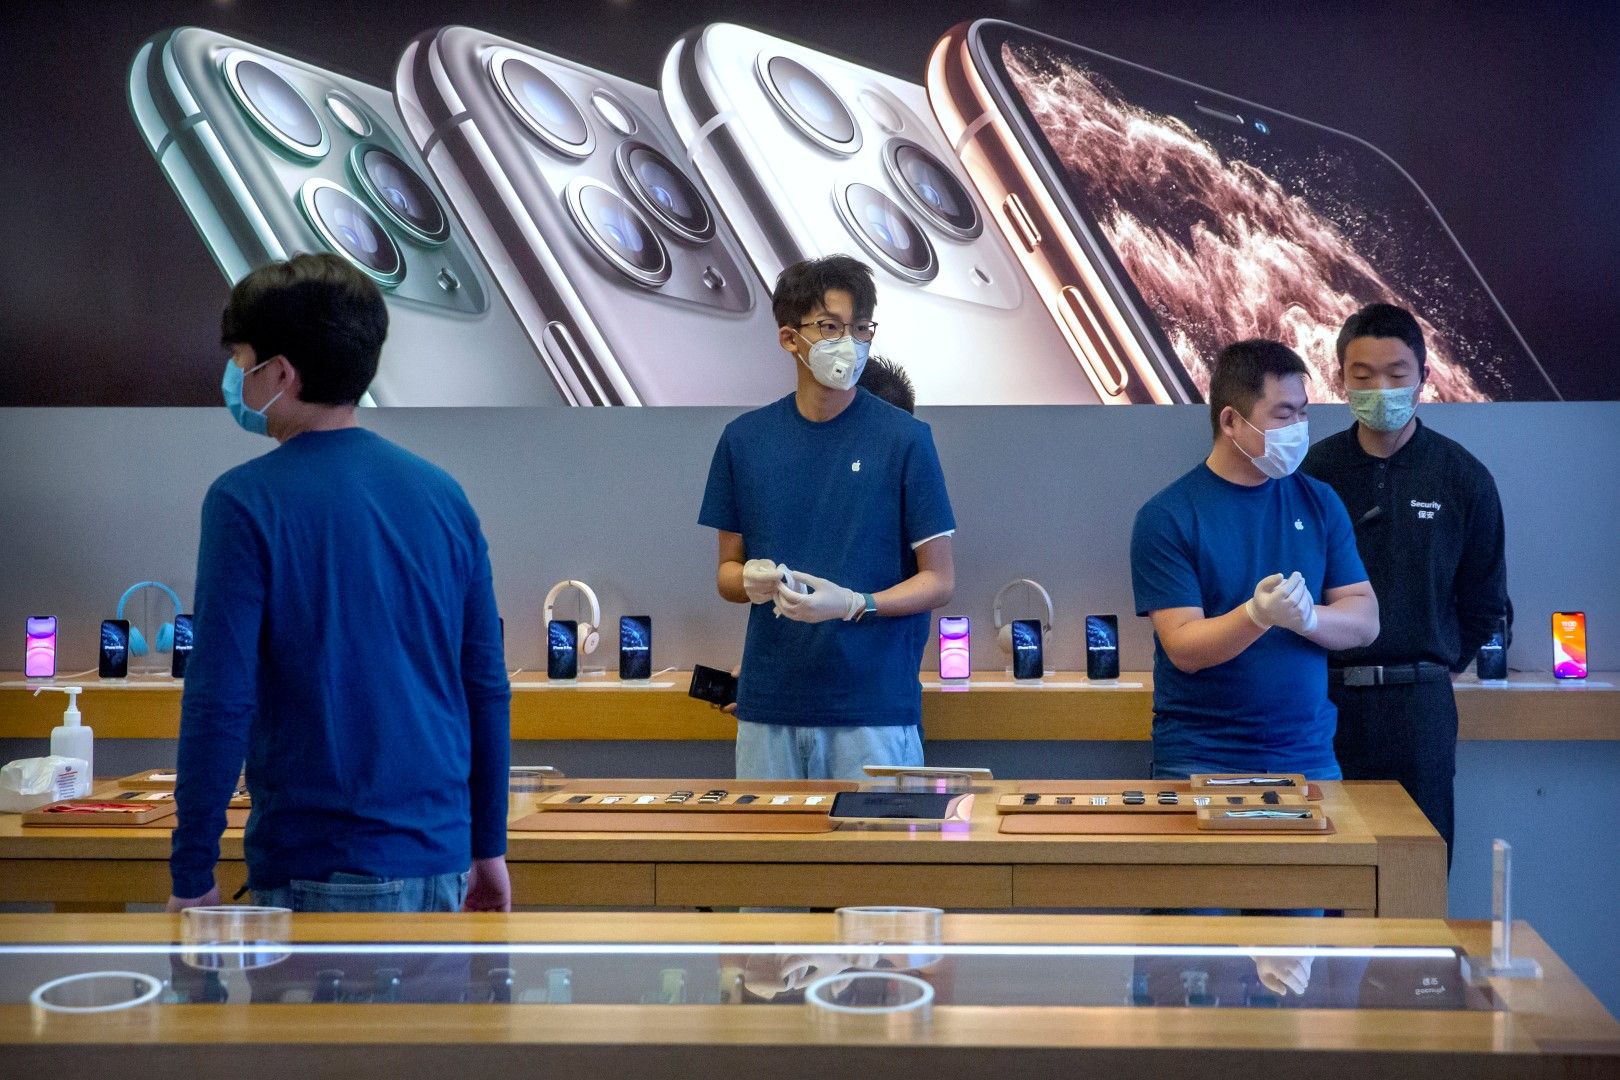 Служители с маски обслужват току-що отворен отново магазин на Епъл (Apple) в Пекин